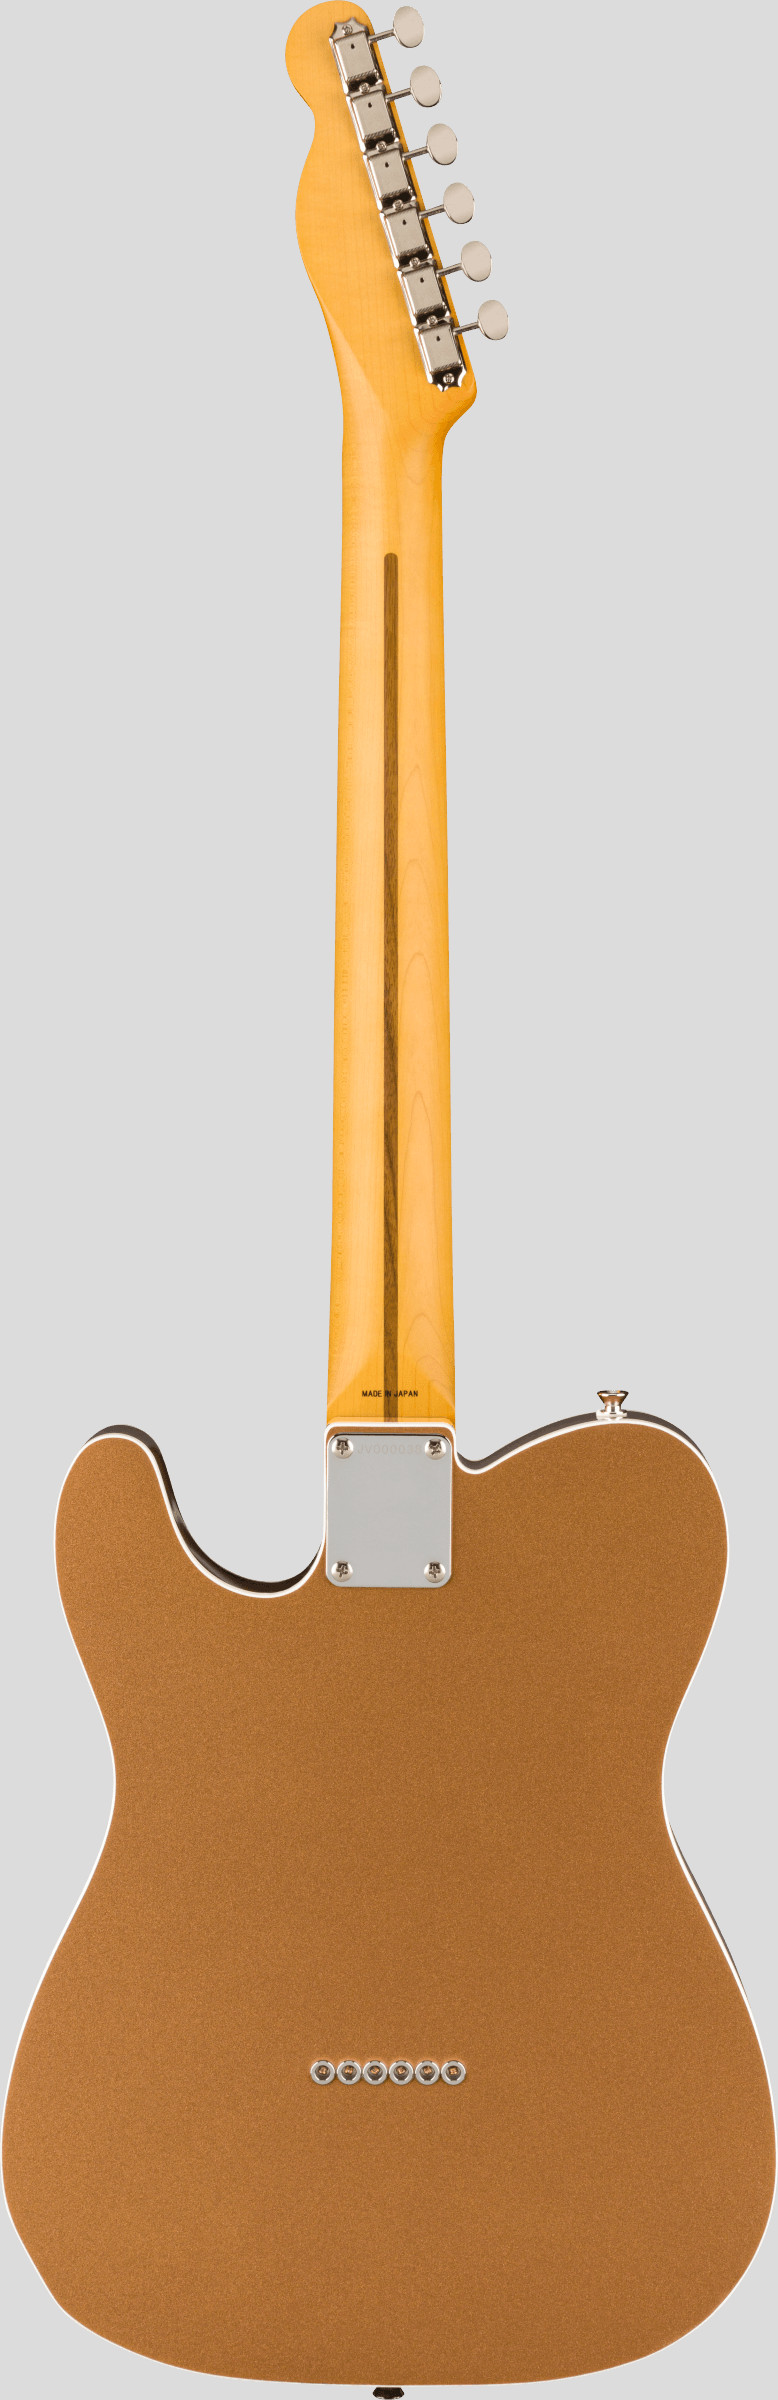 Fender JV Modified 60 Custom Telecaster Firemist Gold 2